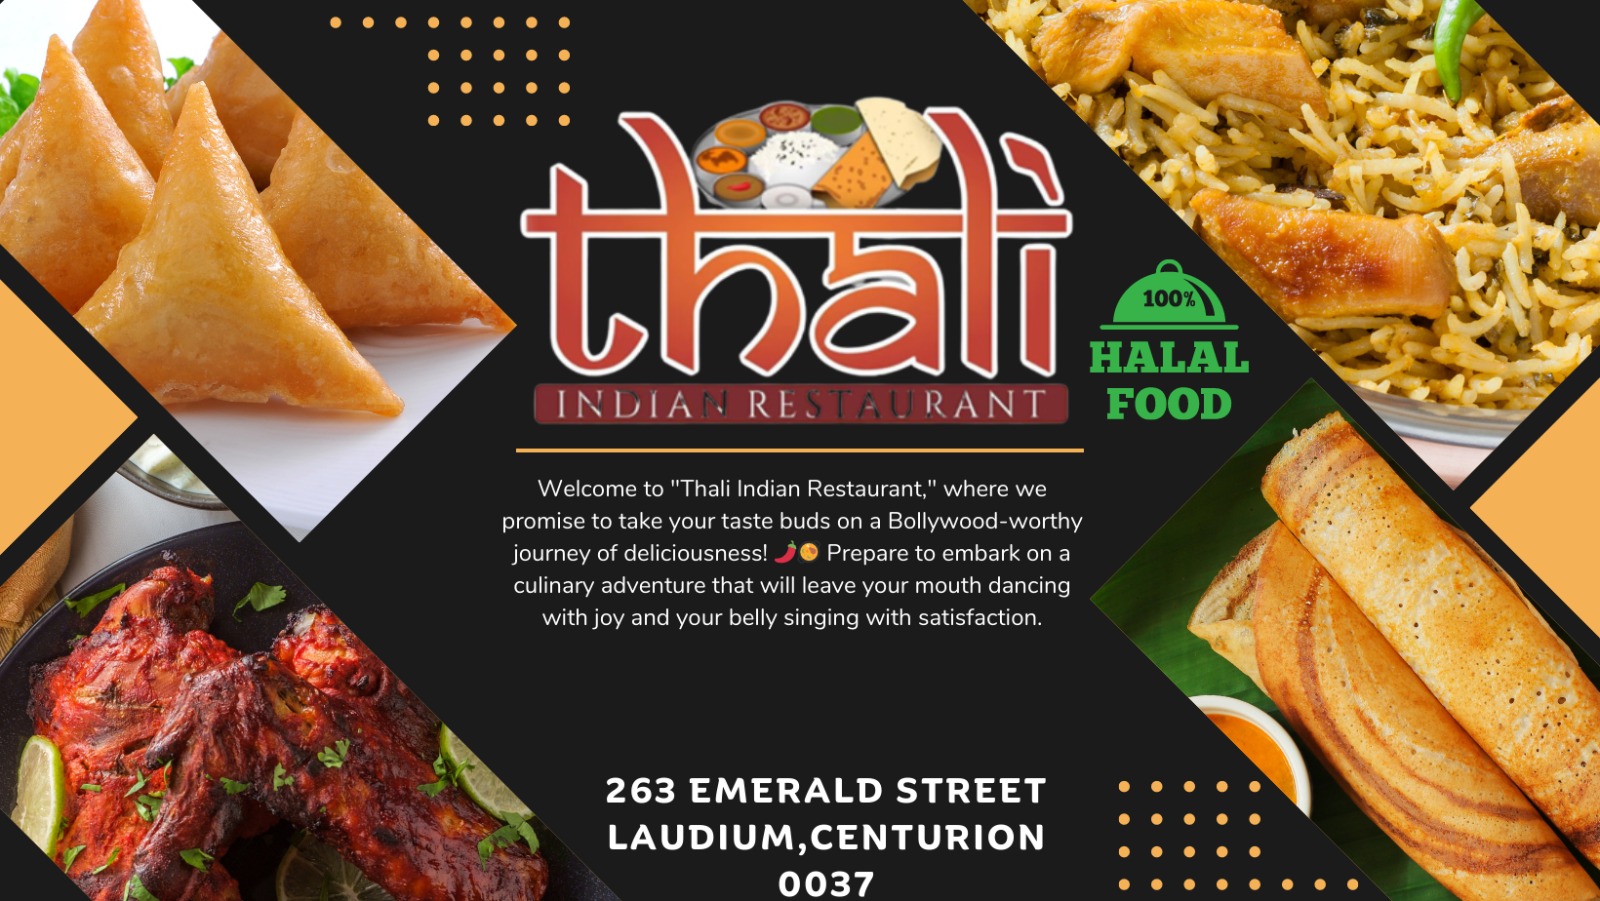 Thali Indian Restaurant, Laudium